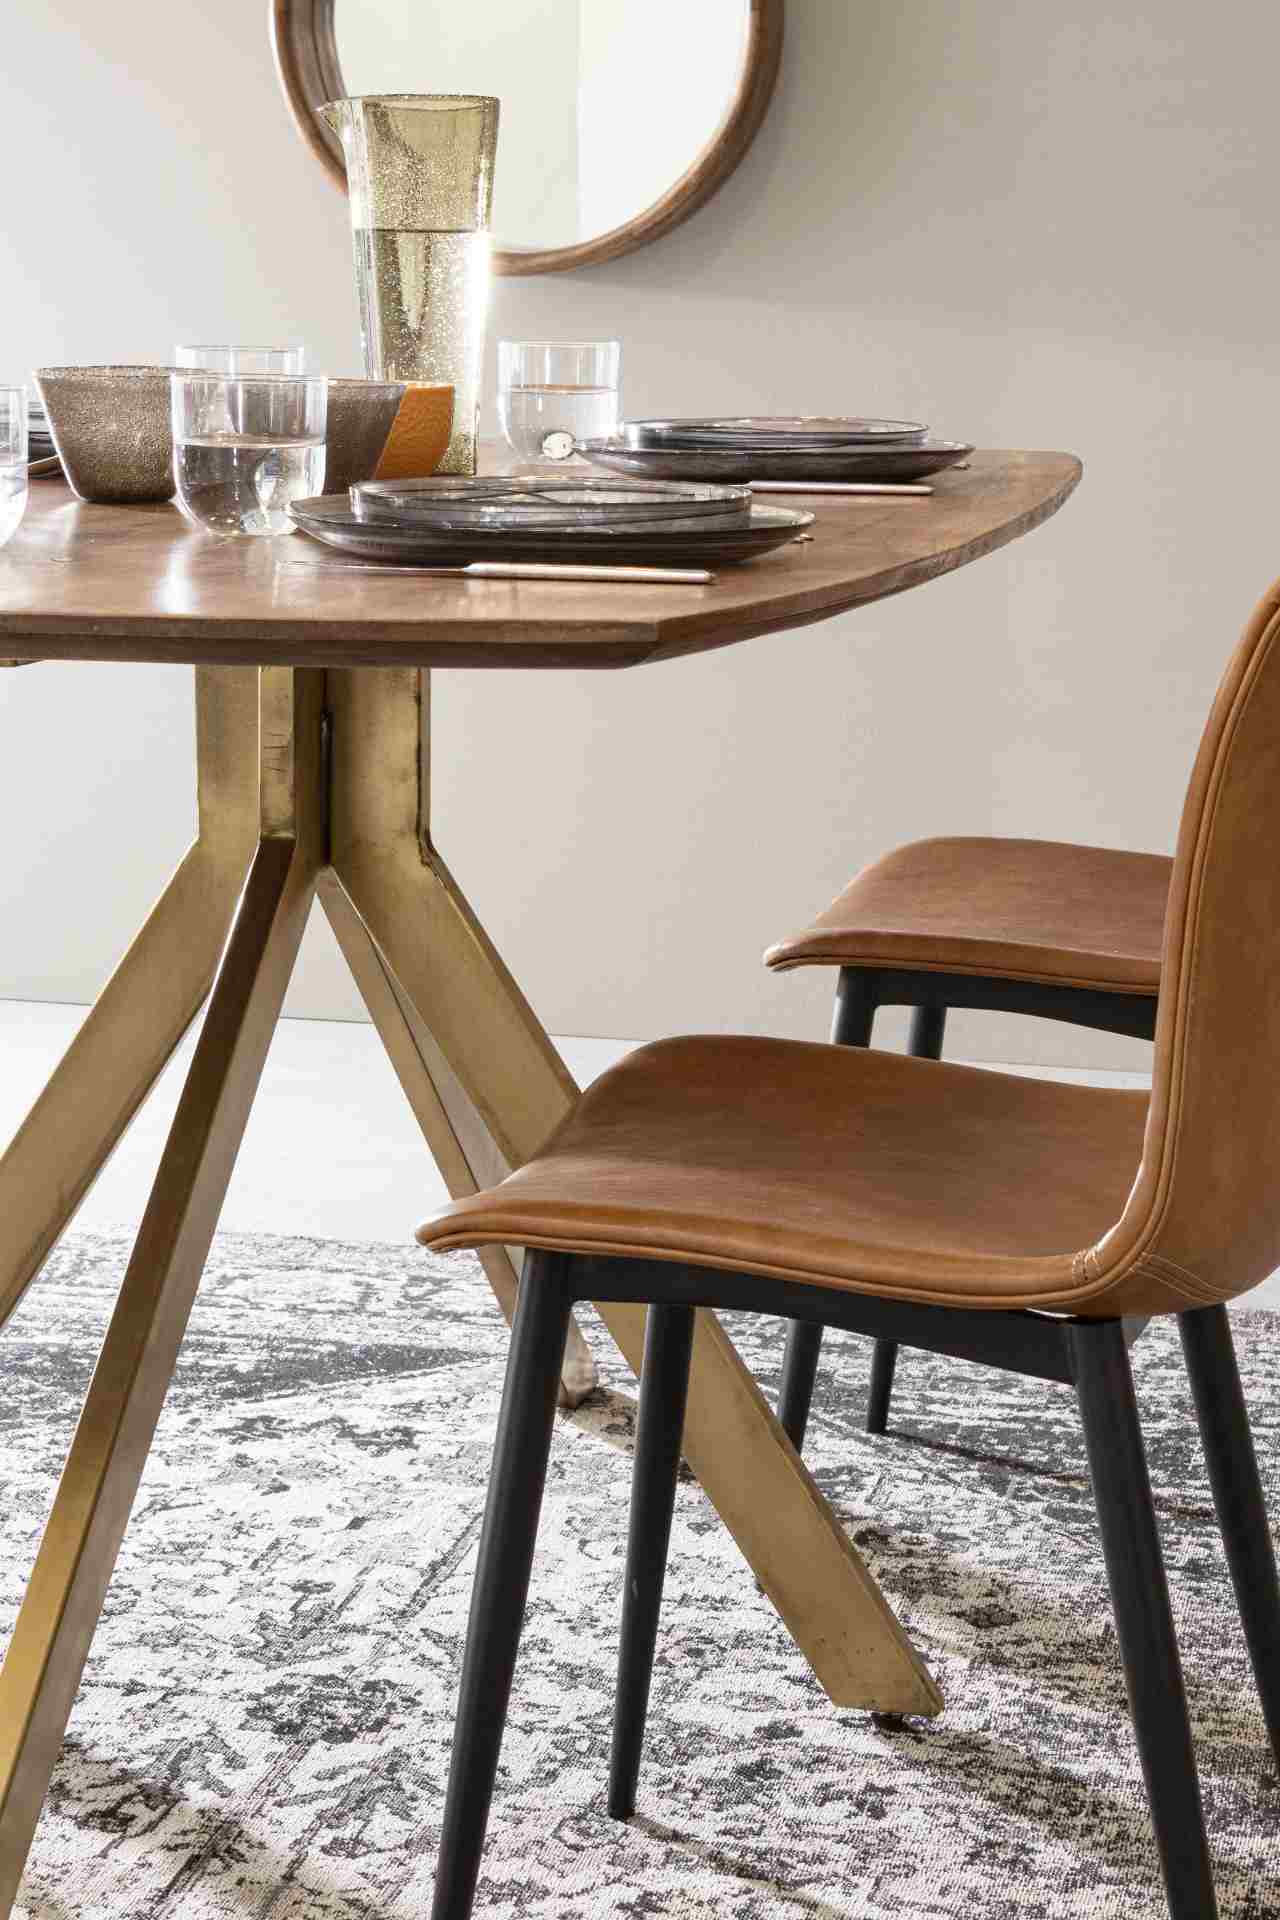 Der Esstisch Sherman überzeugt mit seinem klassischem Design. Gefertigt wurde er aus Mangoholz, welches einen natürlichen Farbton besitzt. Das Gestell ist aus Metall und hat eine goldene Farbe. Das Tisch hat eine Breite von 150 cm.